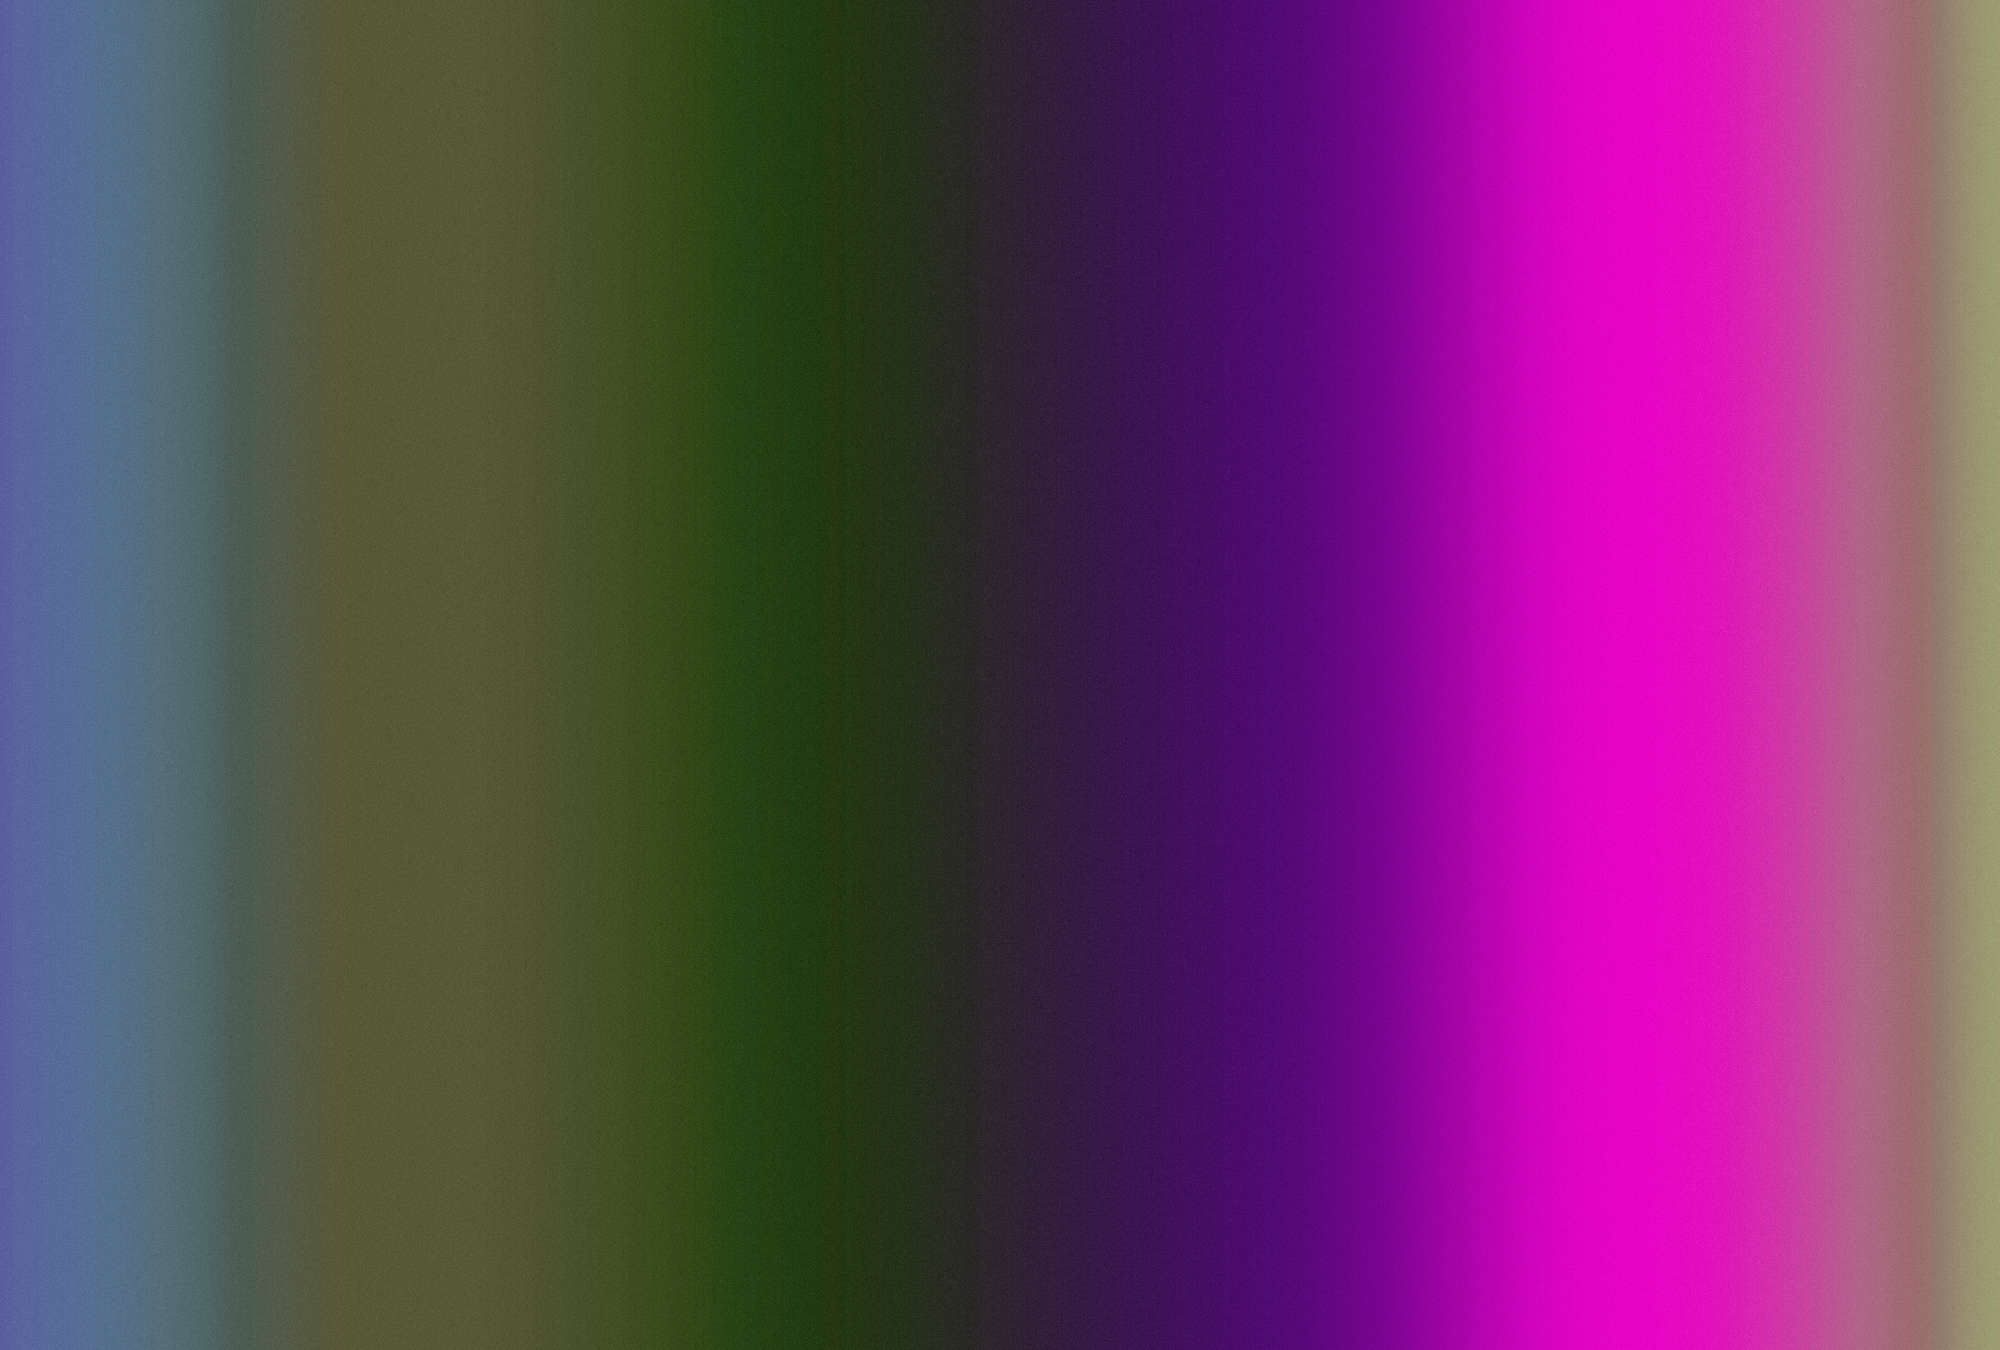             Over the Rainbow 3 – Fototapete buntes Farbspektrum mit Neon-Pink
        